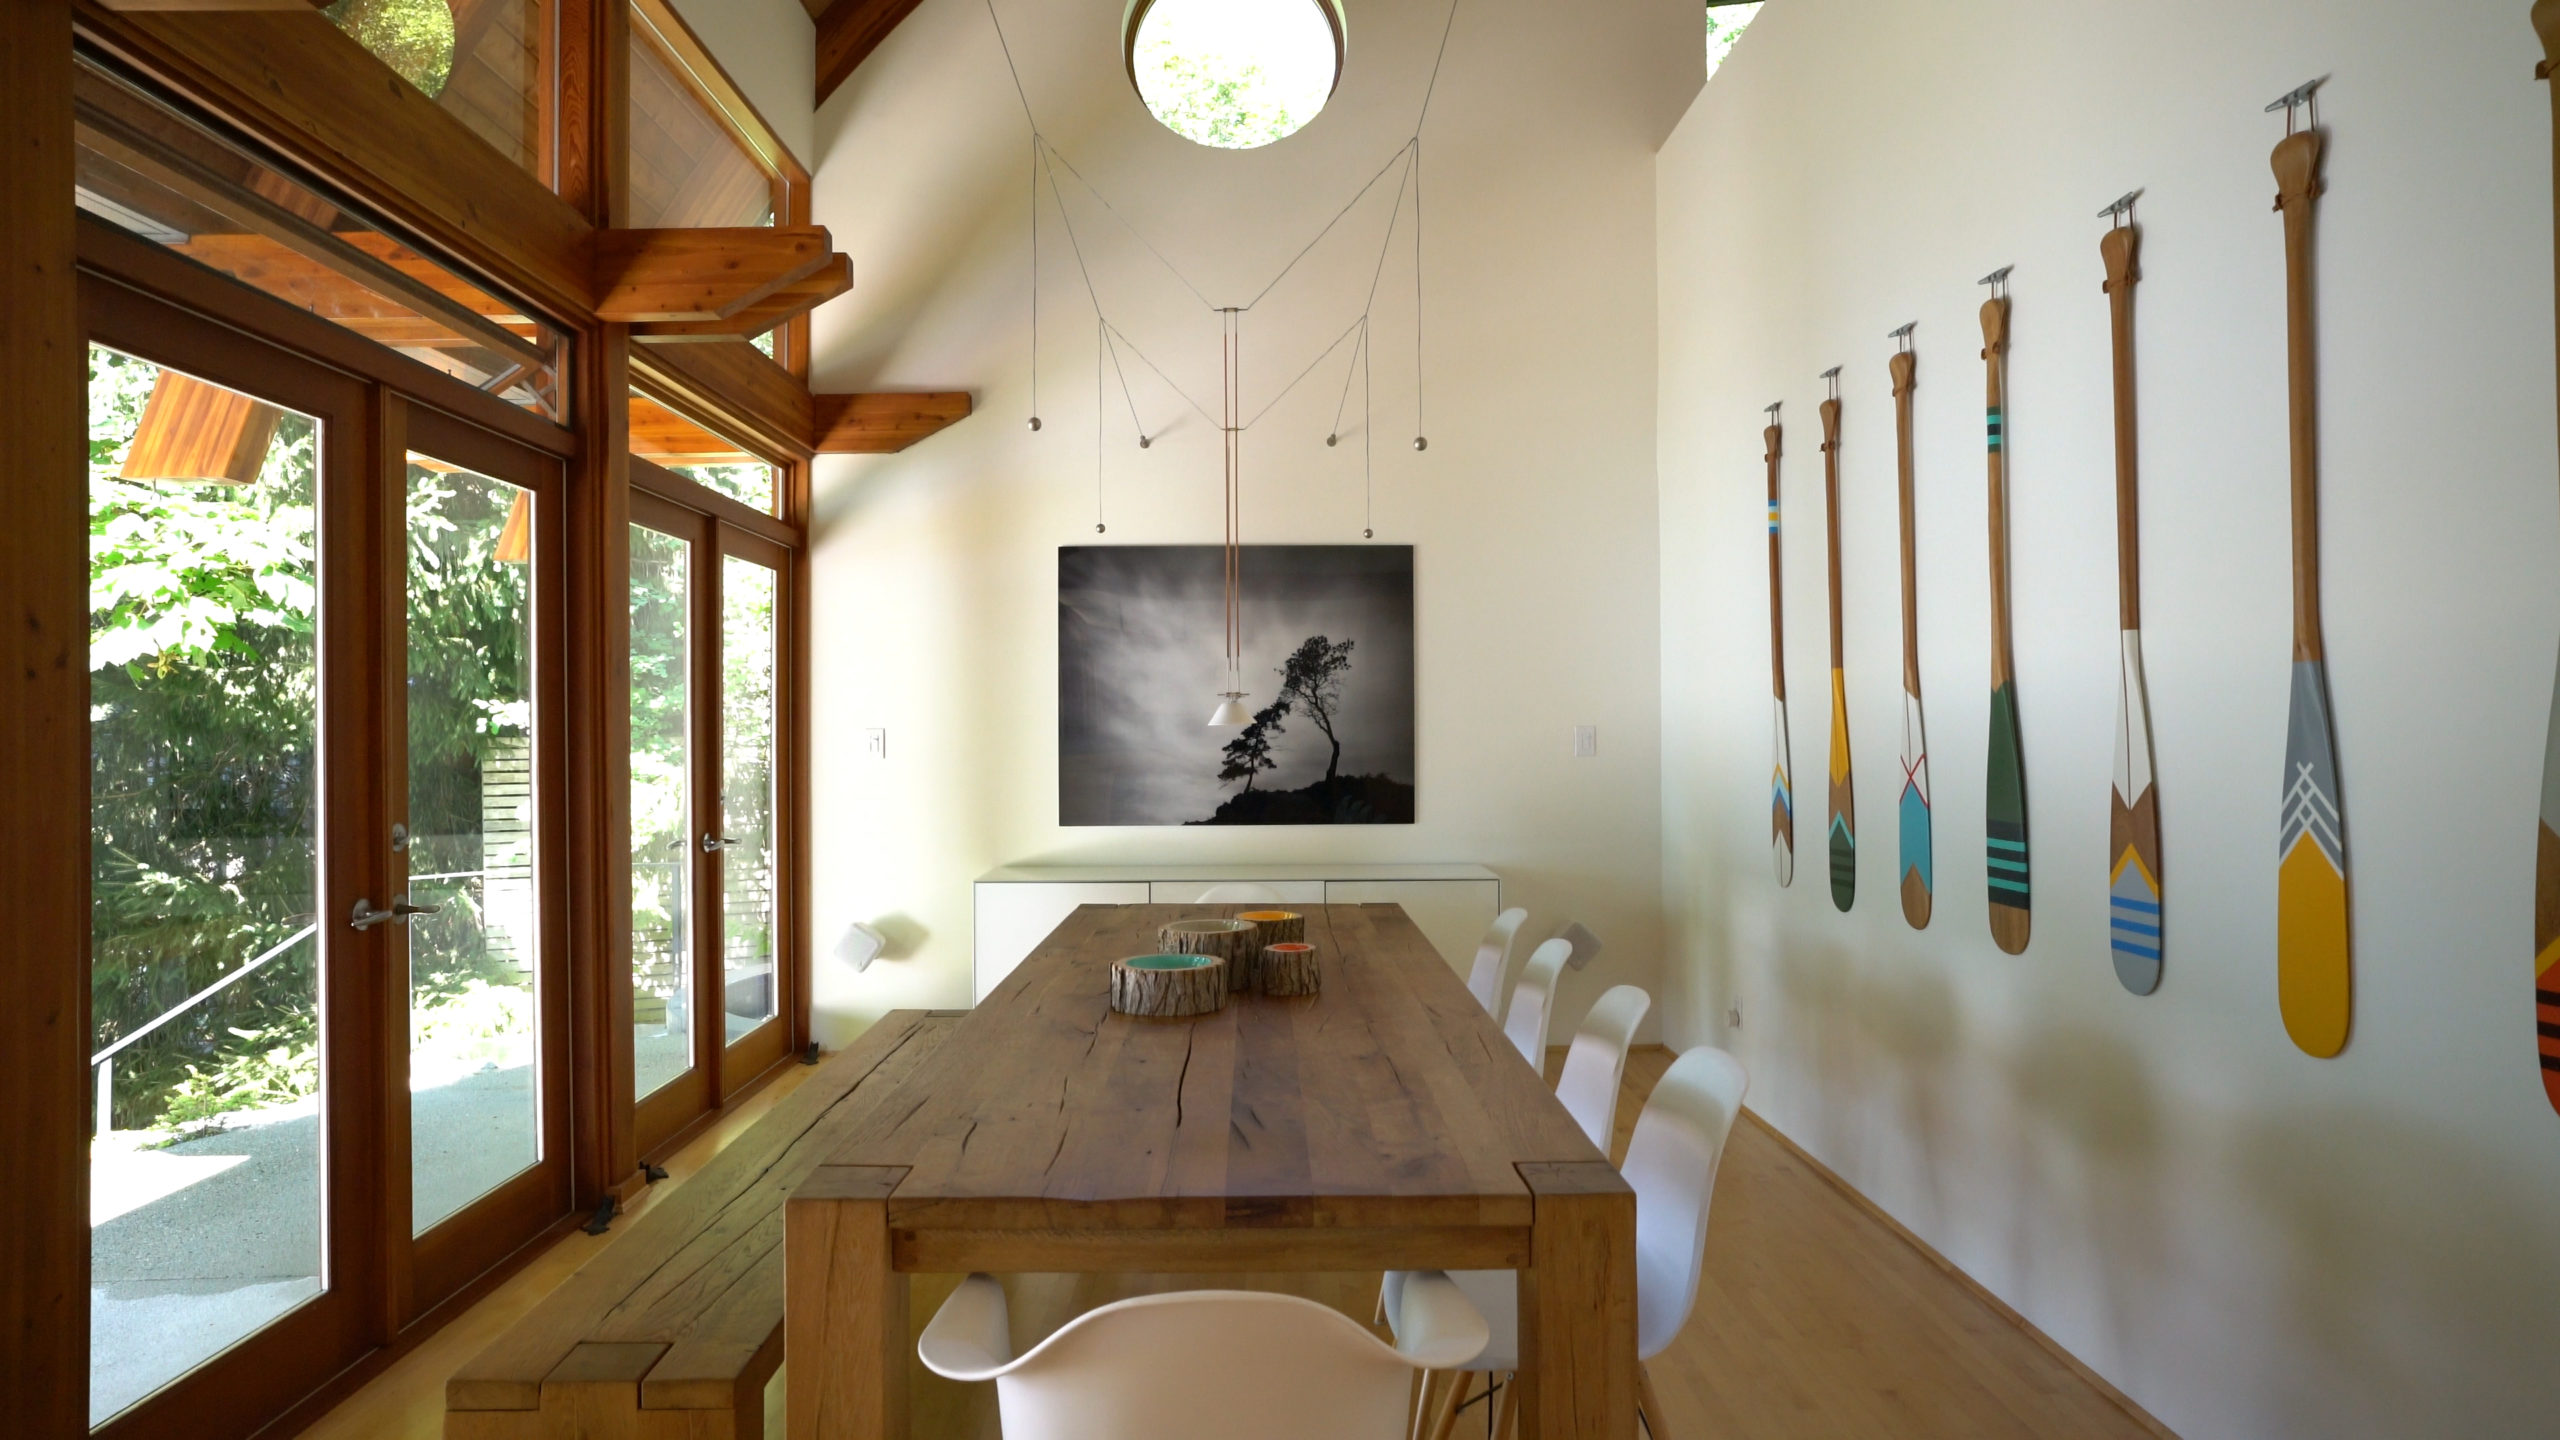 Spacious dining room in a custom built house on Bowen Island.